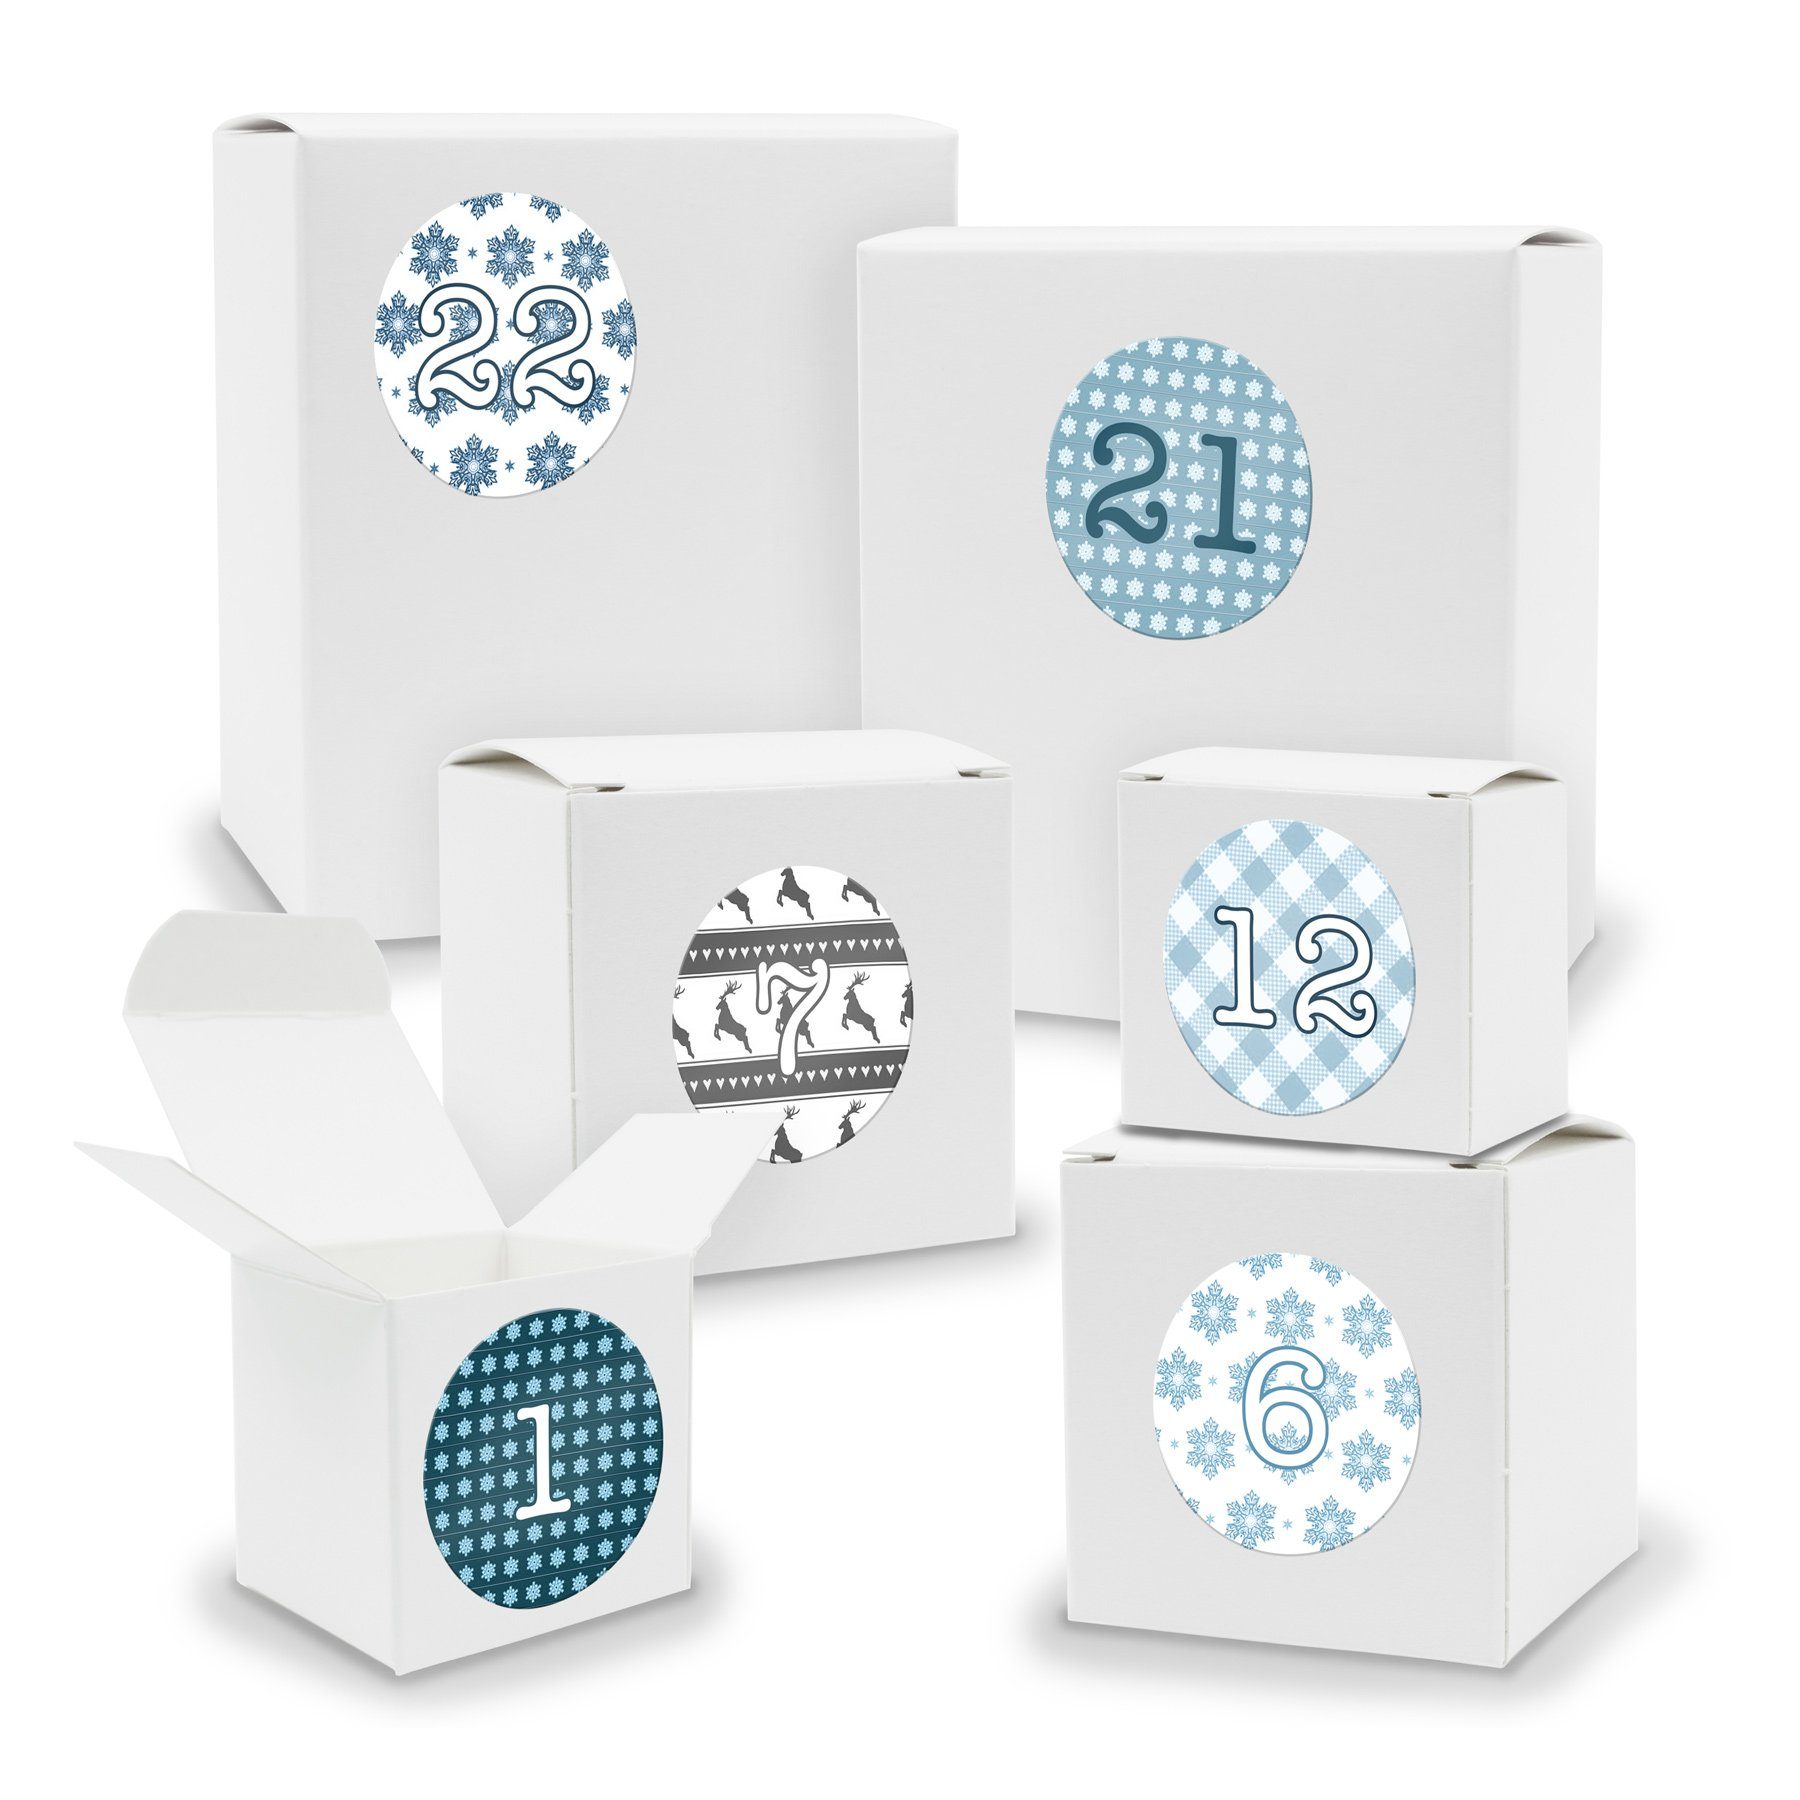 Füllen + Sticker Würfel Adventskalender Adventskalender WEISS Quader 24x gemischt itenga zum befüllbarer